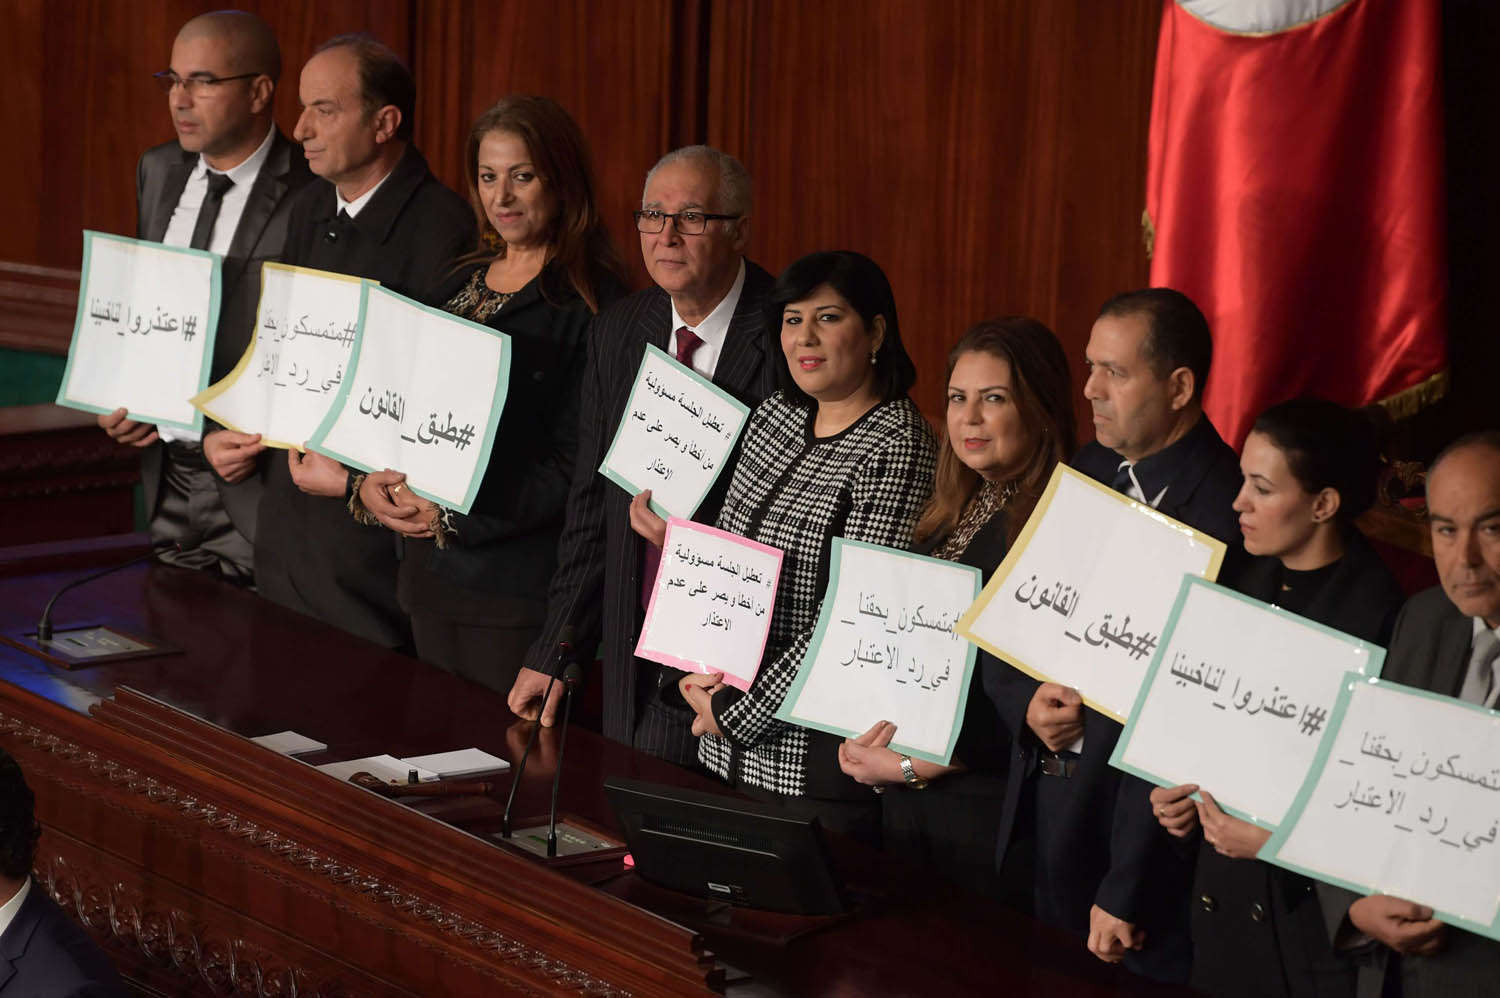 البرلمانية عبير موسي تتوسط برلمانيين تونسيين يطالبون بمحاسبة رئيس البرلمان راشد الغنوشي